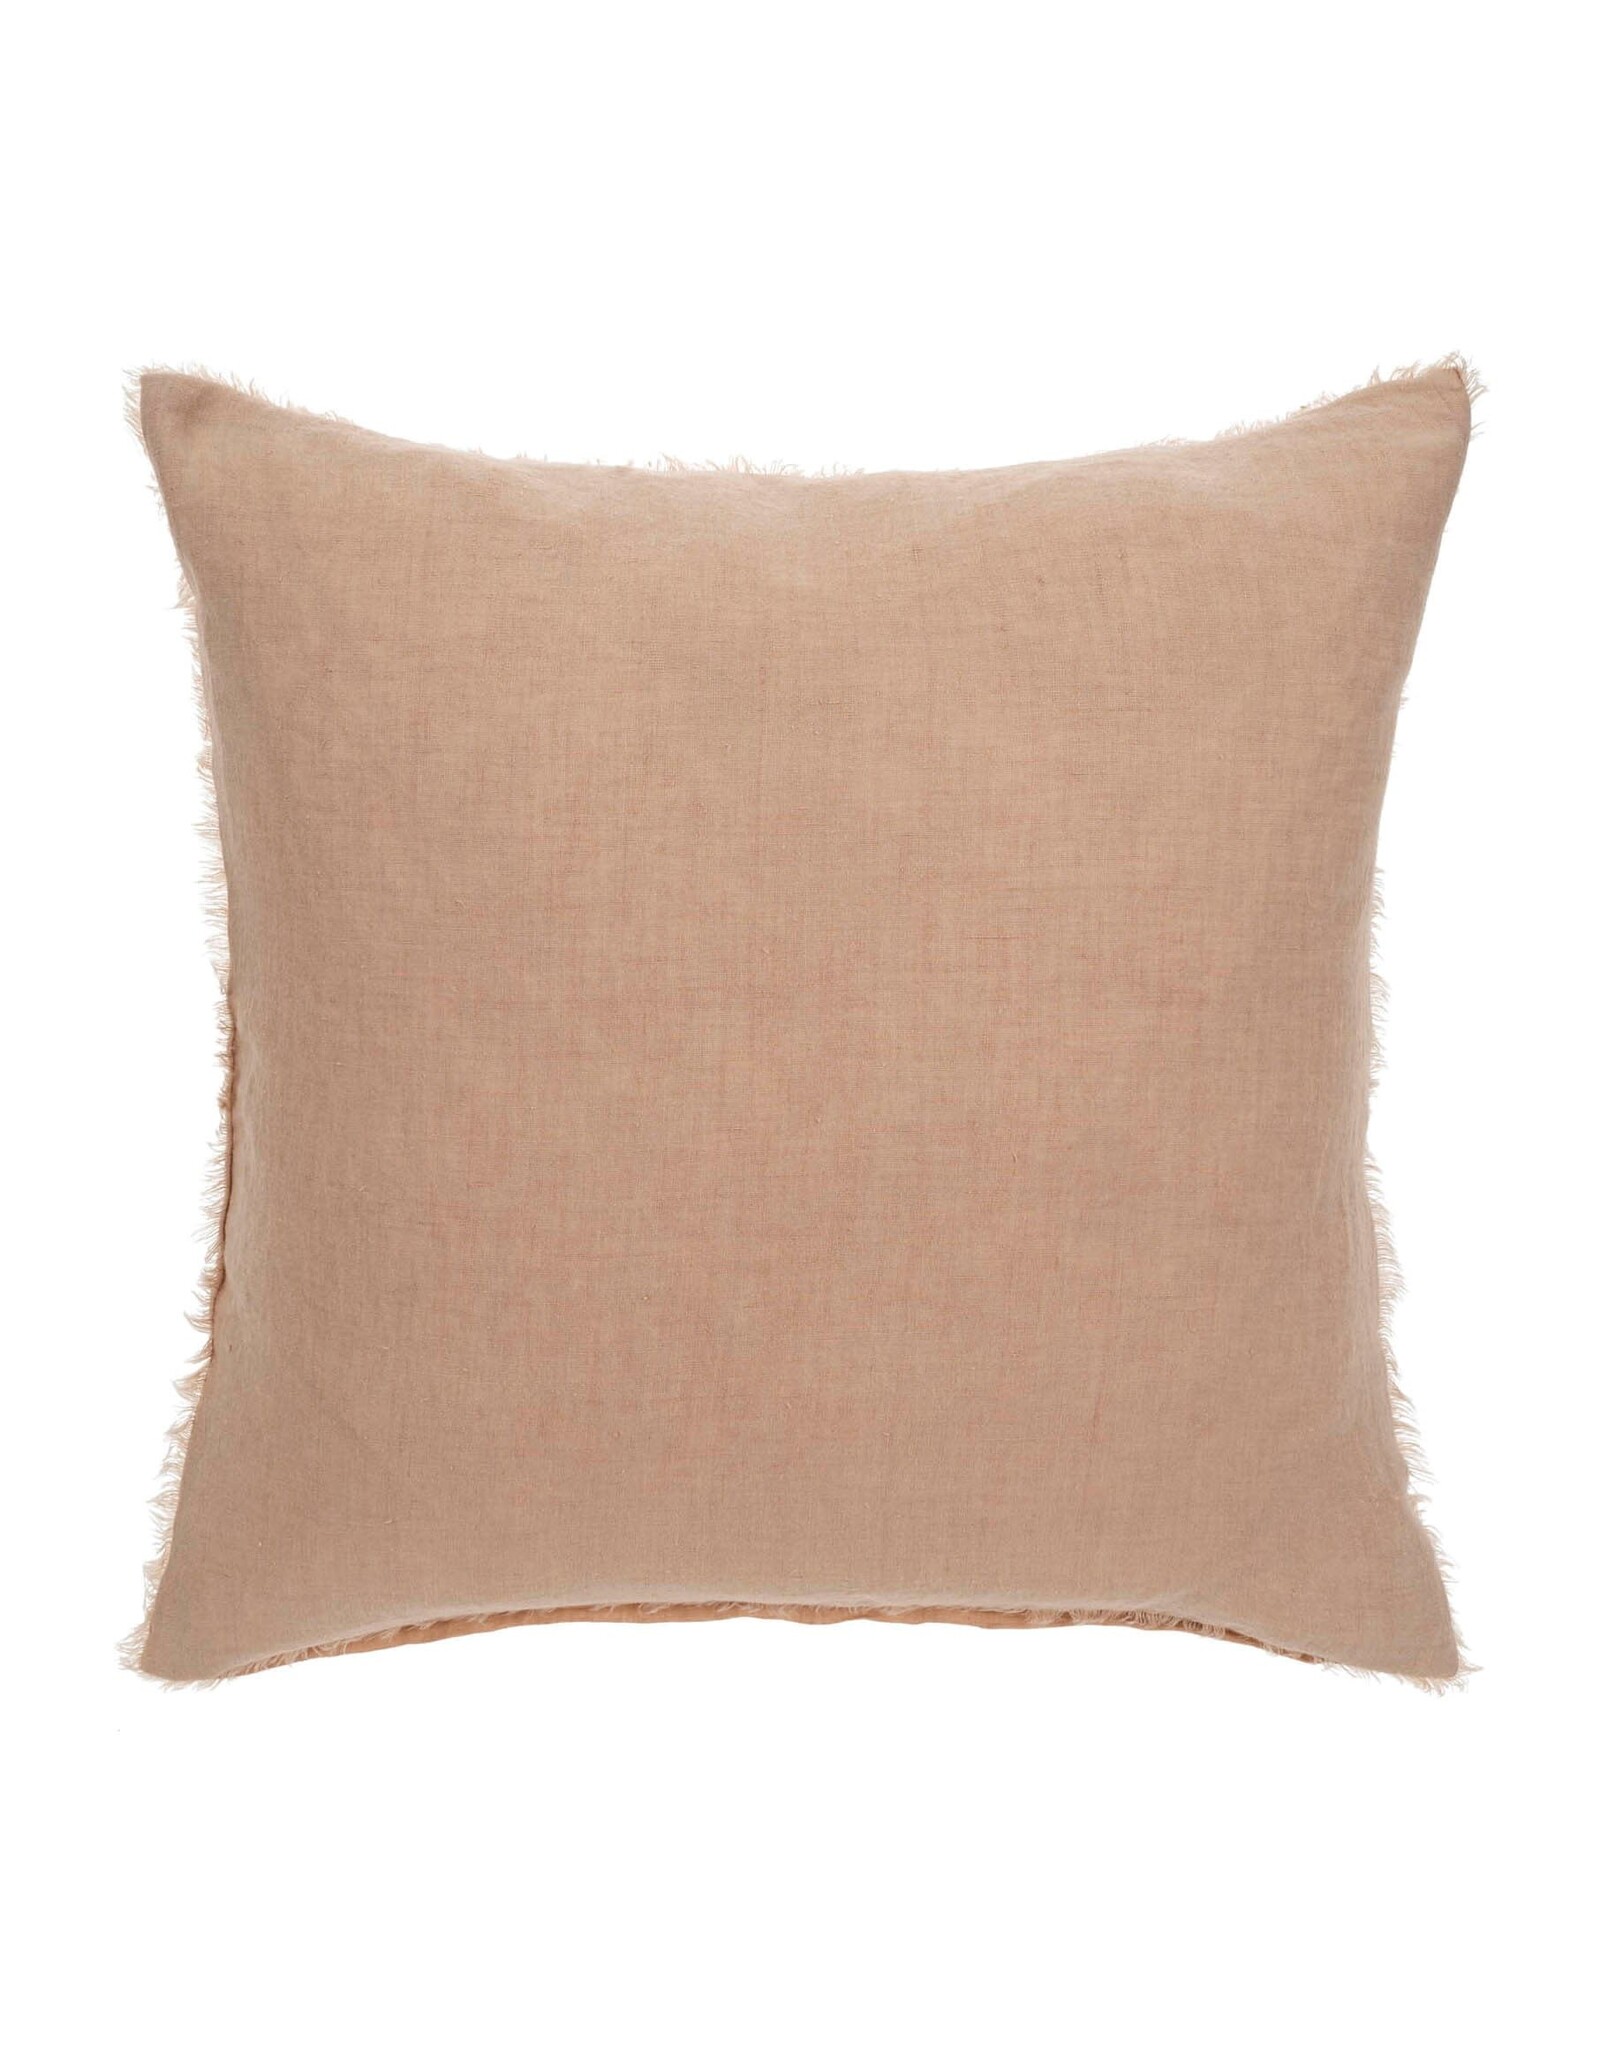 Lina Linen Pillow - Peony 24 x 24